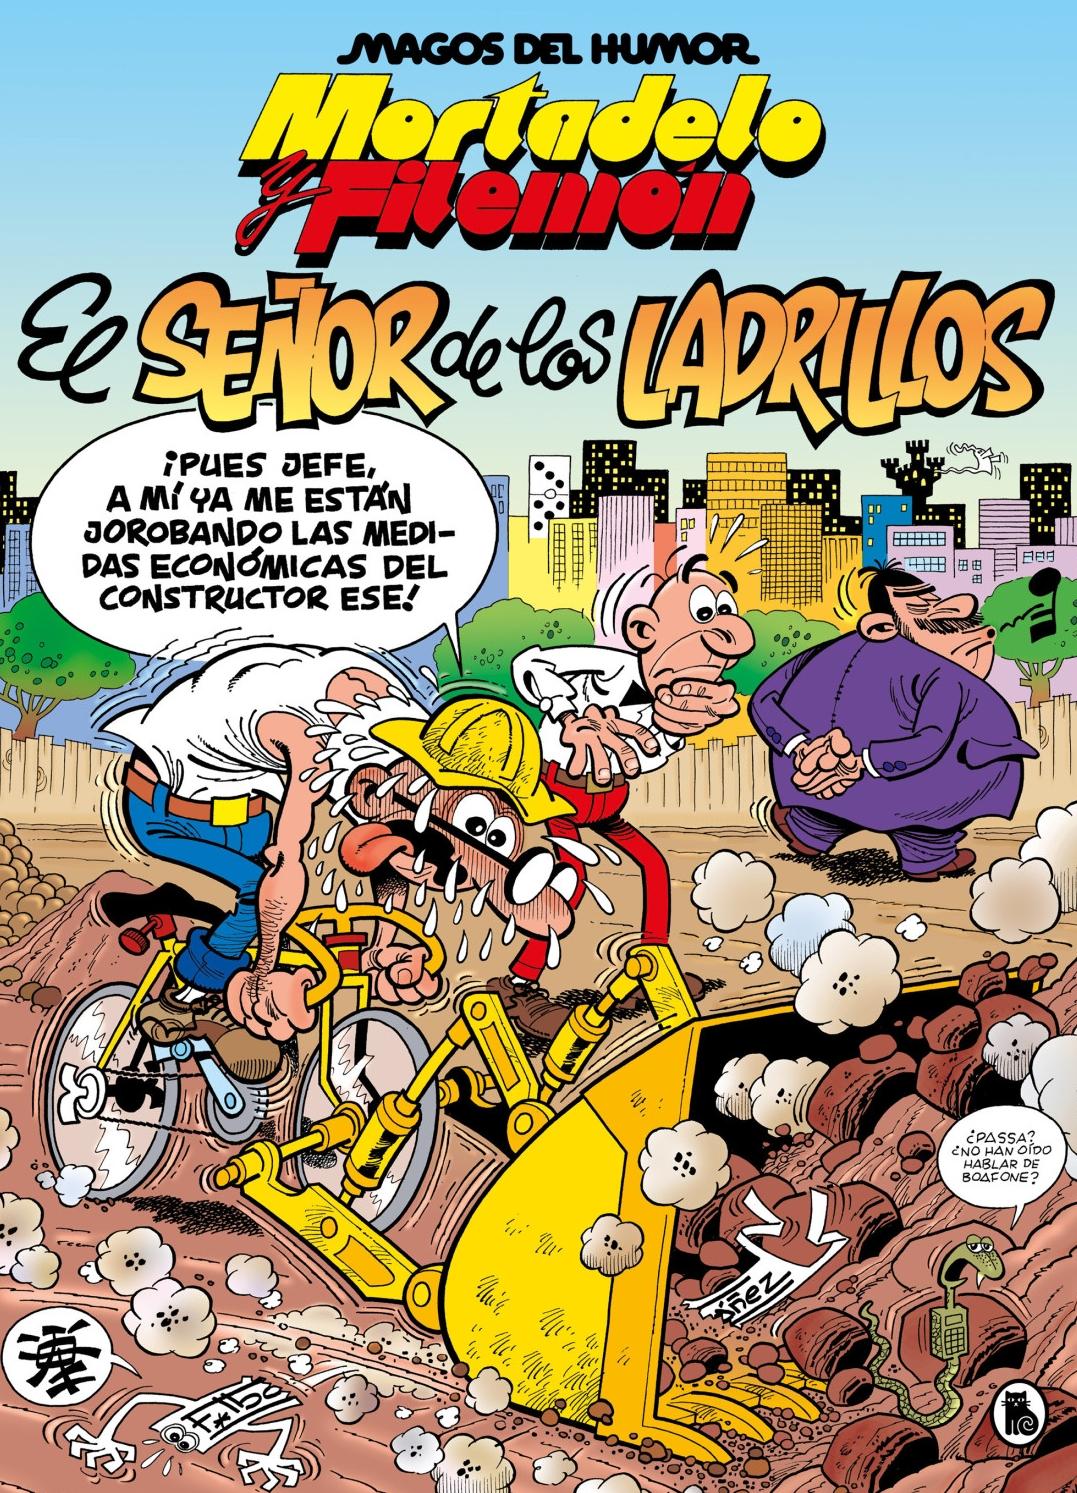 El Señor de los Ladrillos "Magos del Humor 102". 